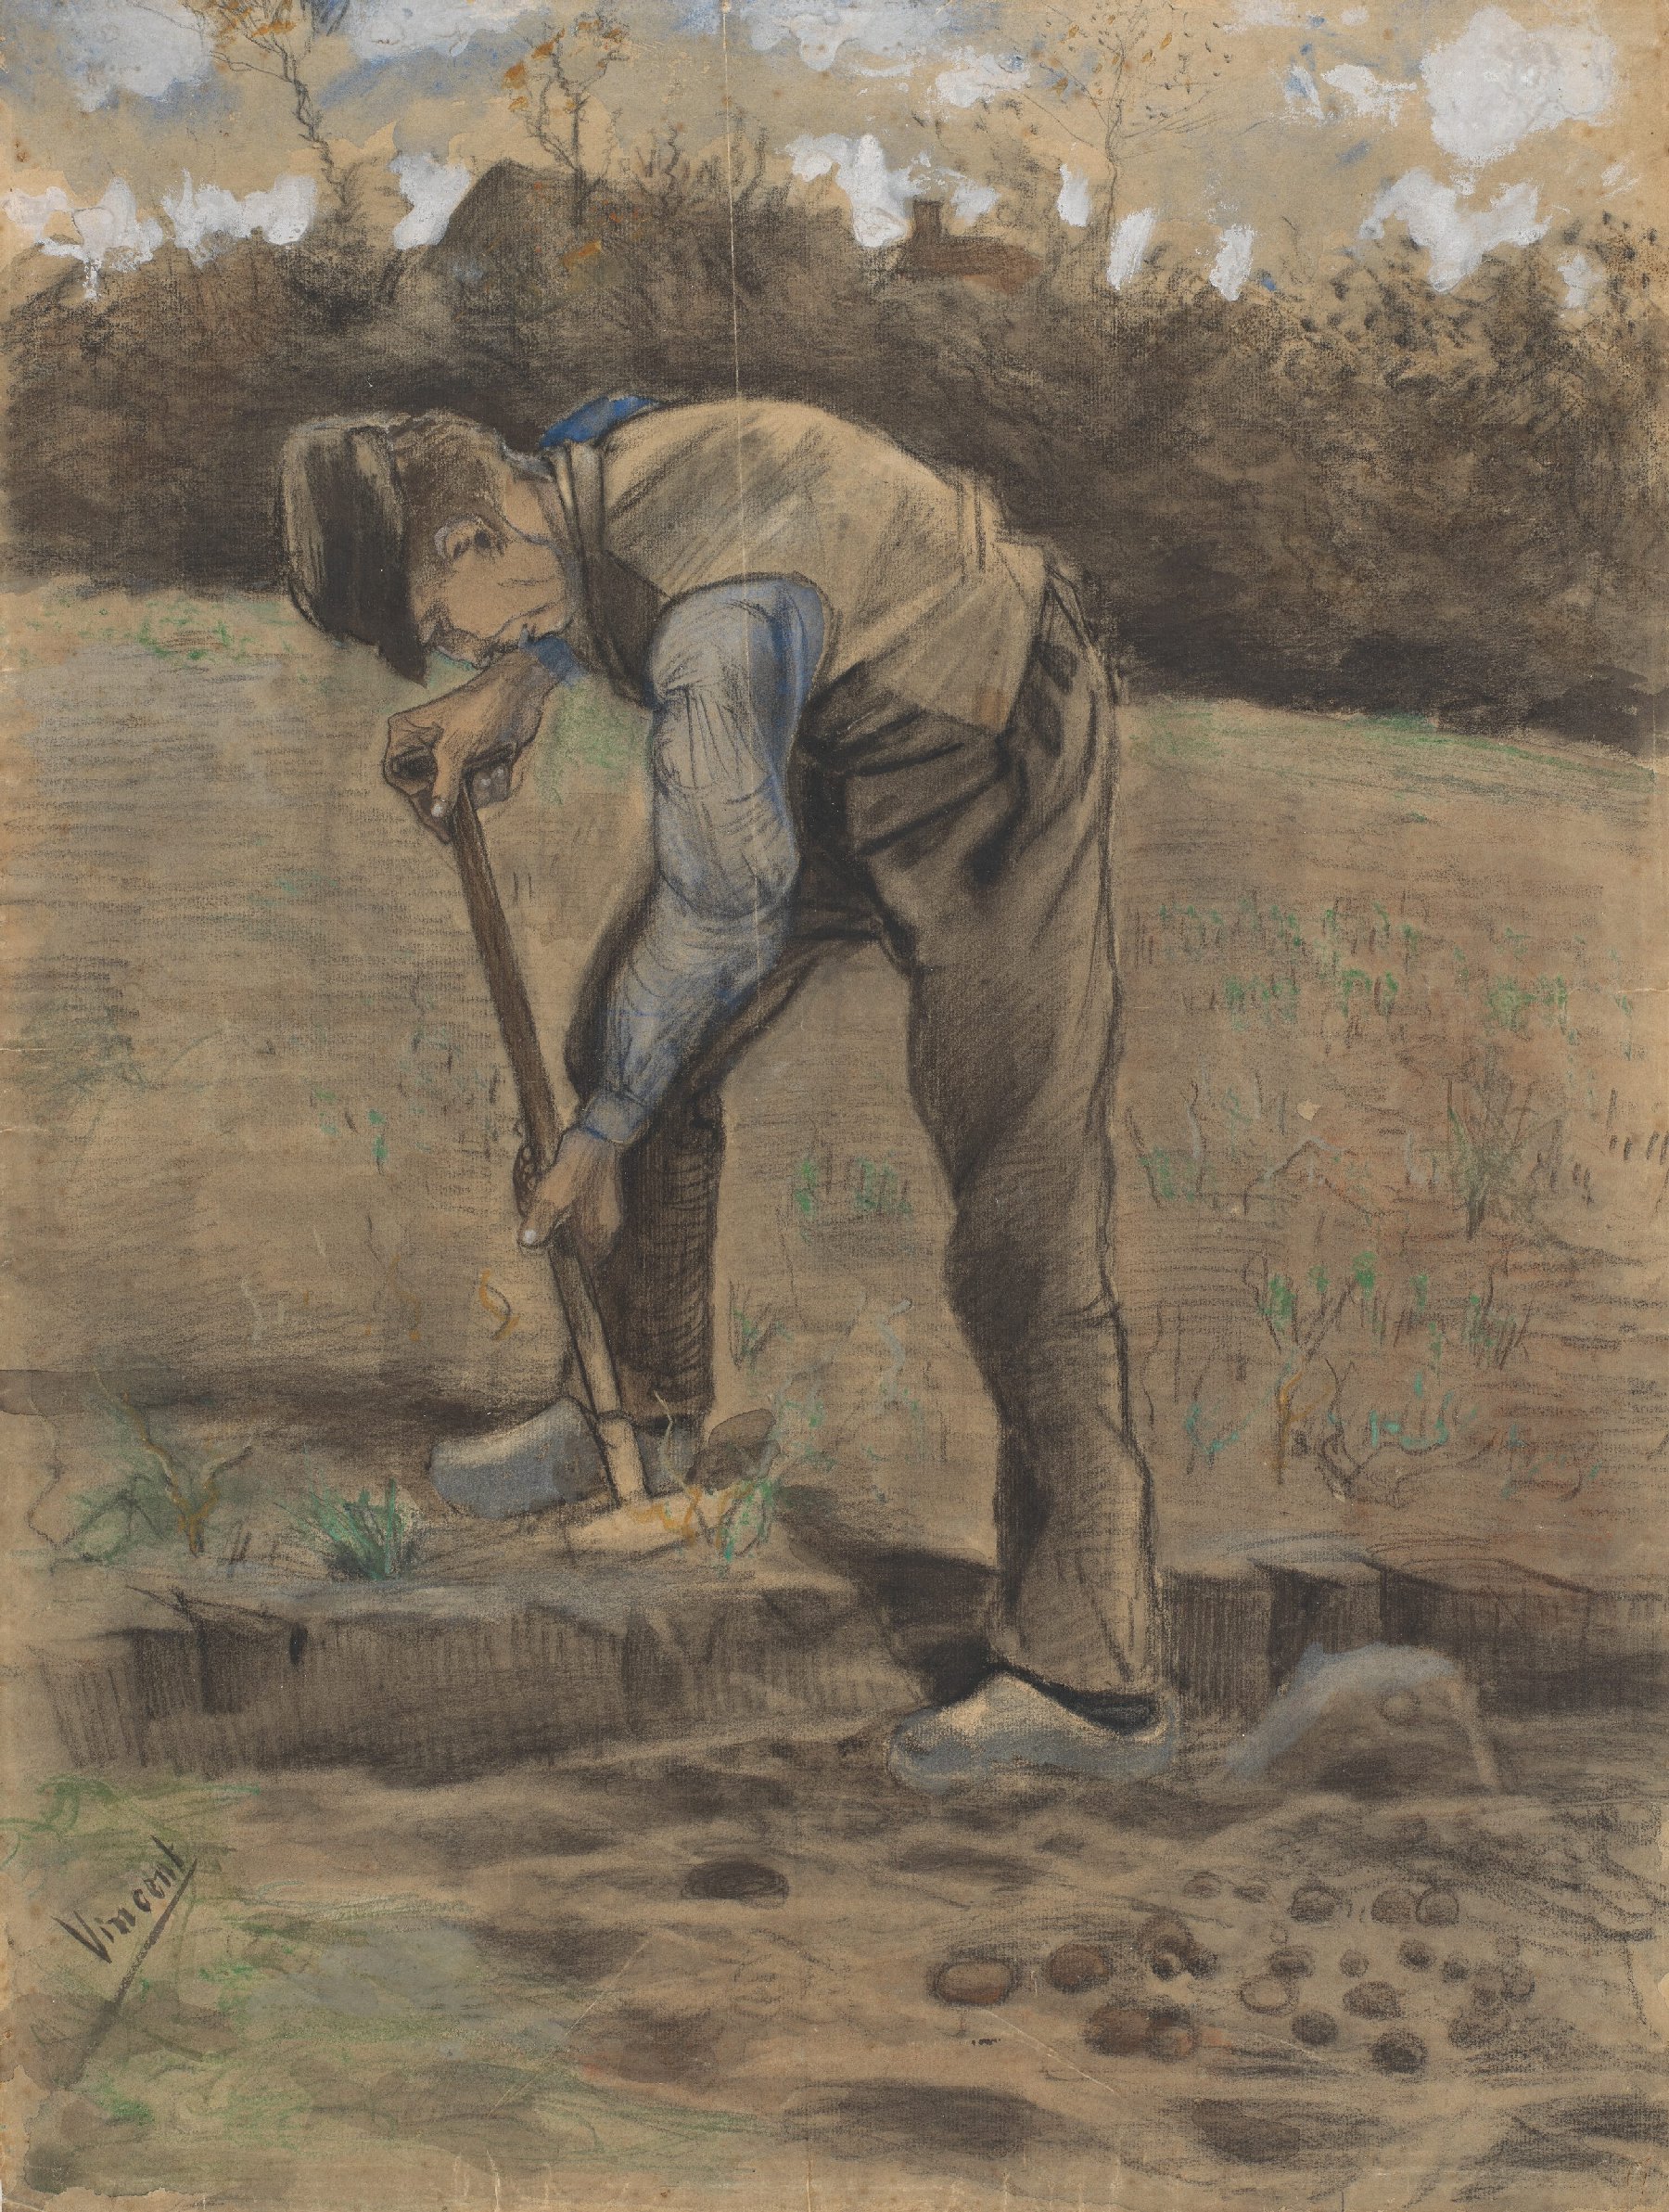 Spitter Vincent van Gogh (1853 - 1890), Etten, oktober 1881